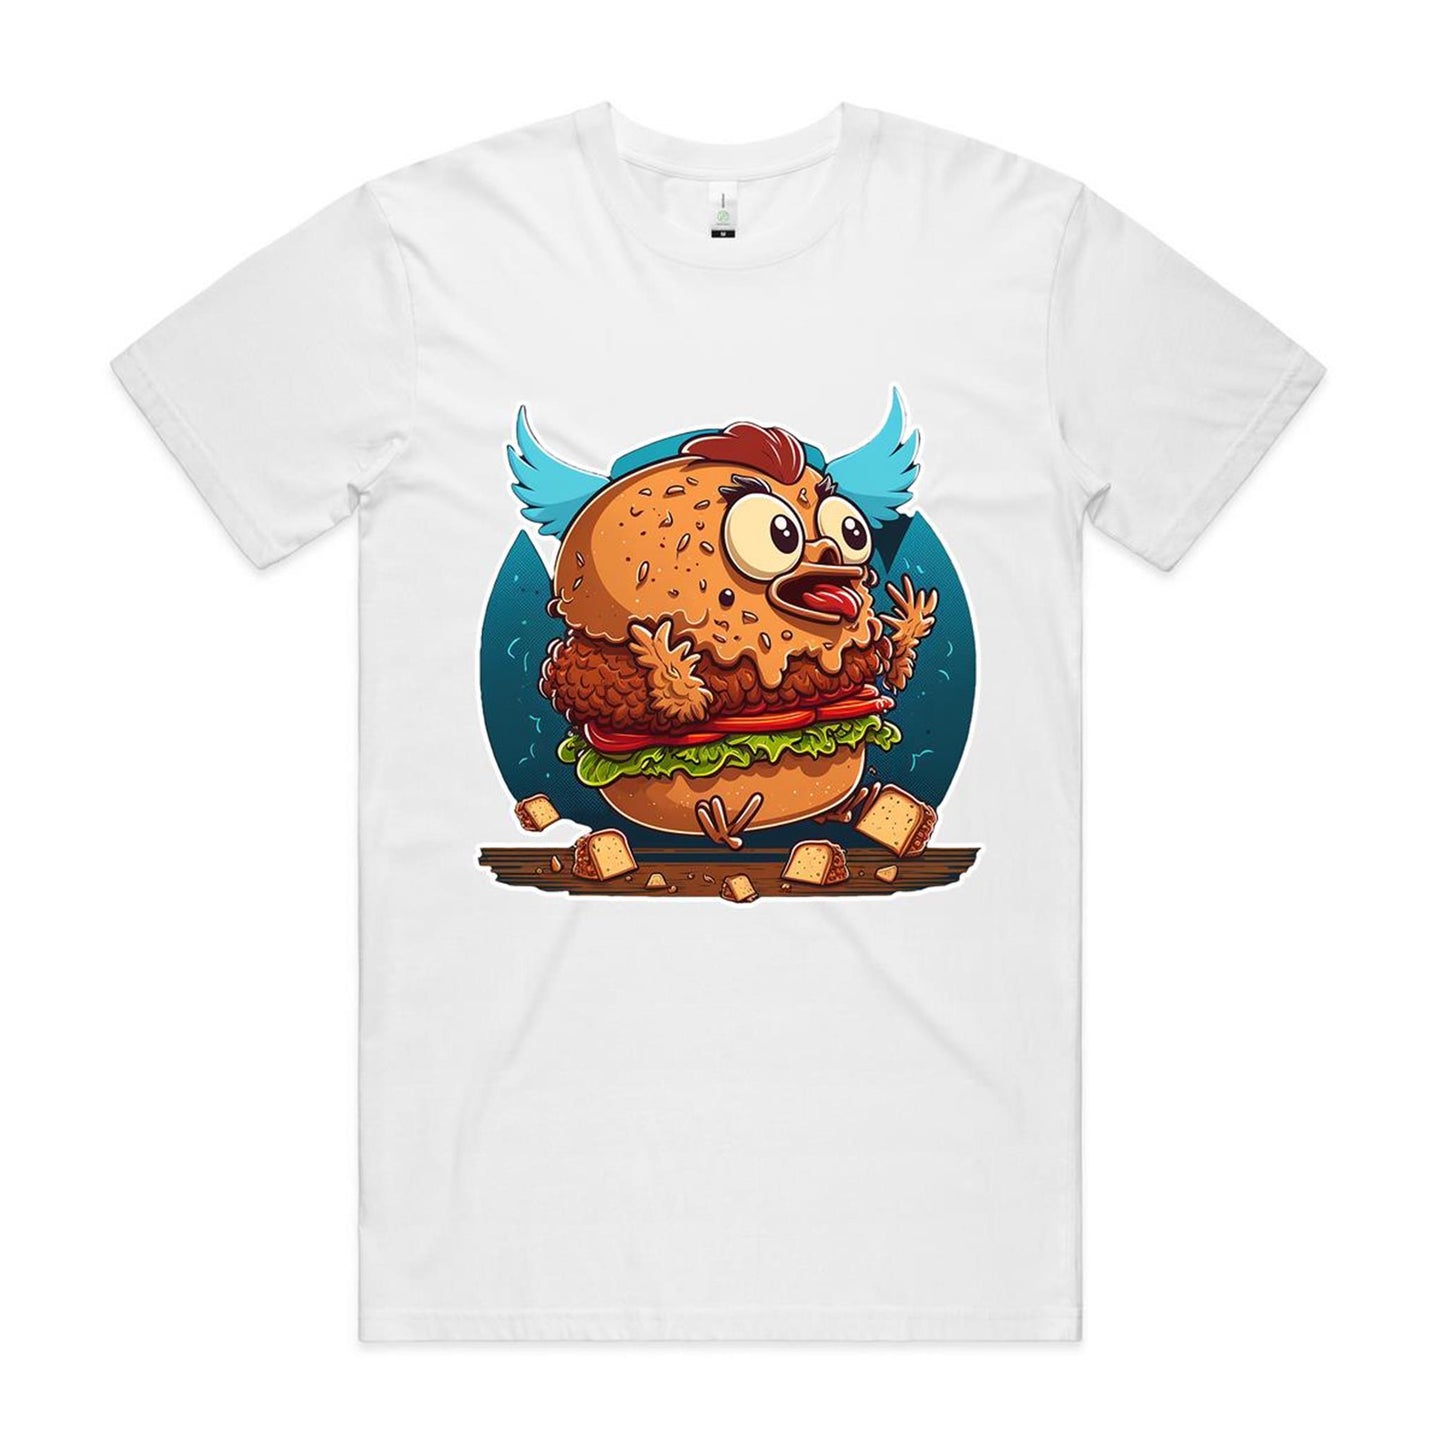 Fried Chicken T-Shirt